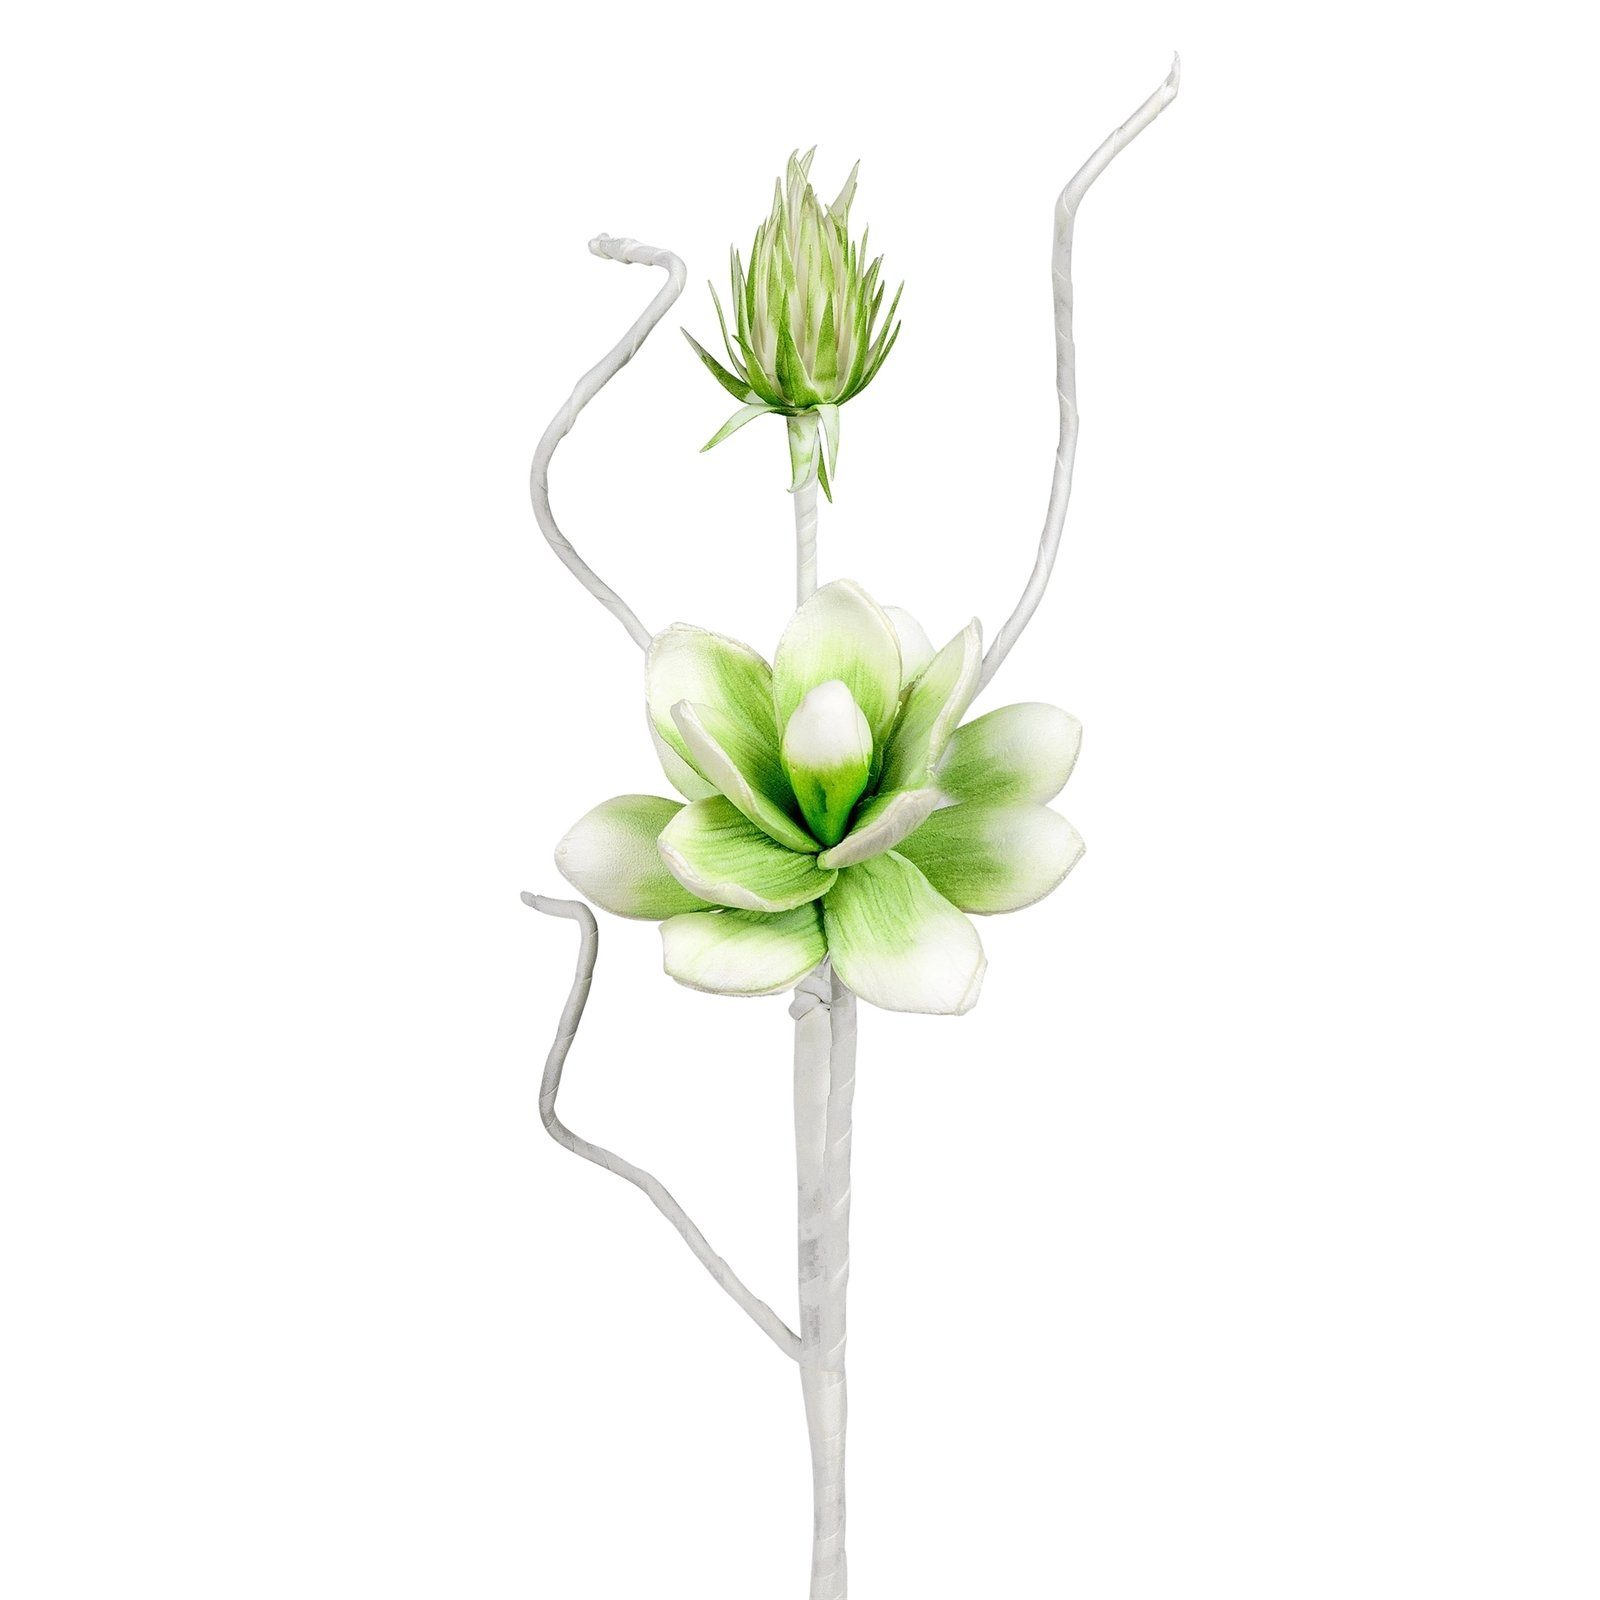 Kunstblume Blütenzweig weiß-grün, formano, Höhe 54 cm